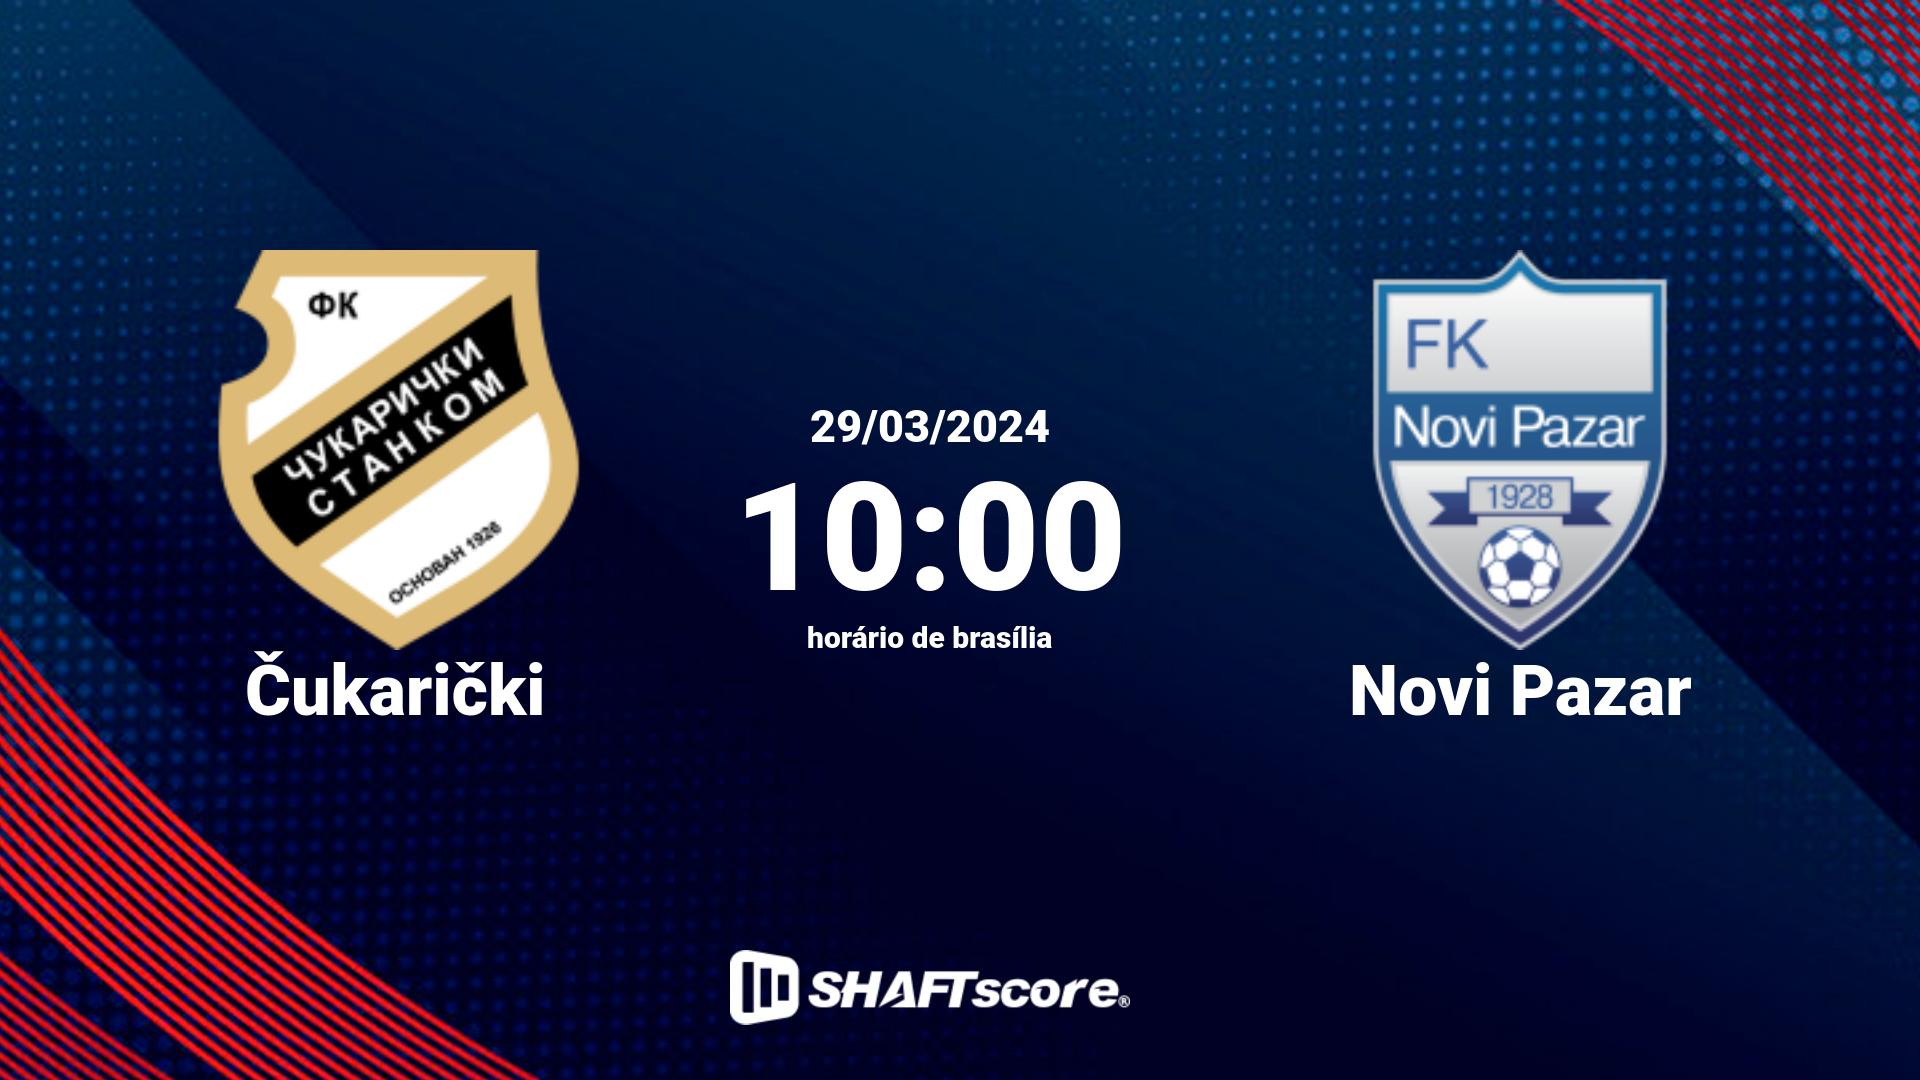 Estatísticas do jogo Čukarički vs Novi Pazar 29.03 10:00